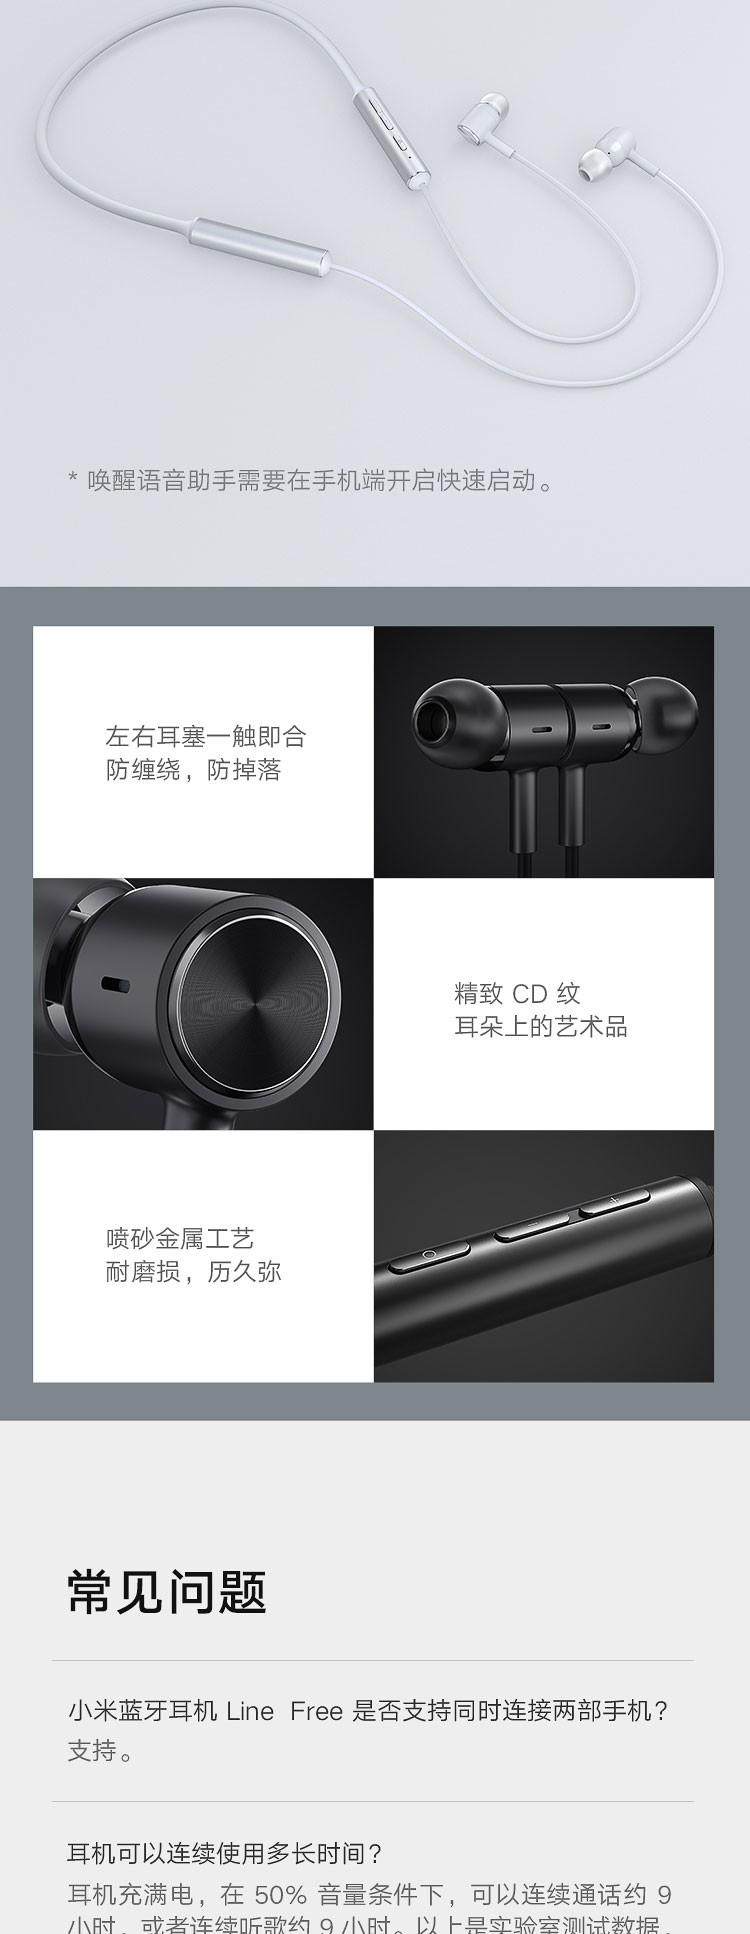 小米/MIUI 蓝牙耳机Line Free  项圈耳机 双动圈 蓝牙5.0 人体工学佩戴